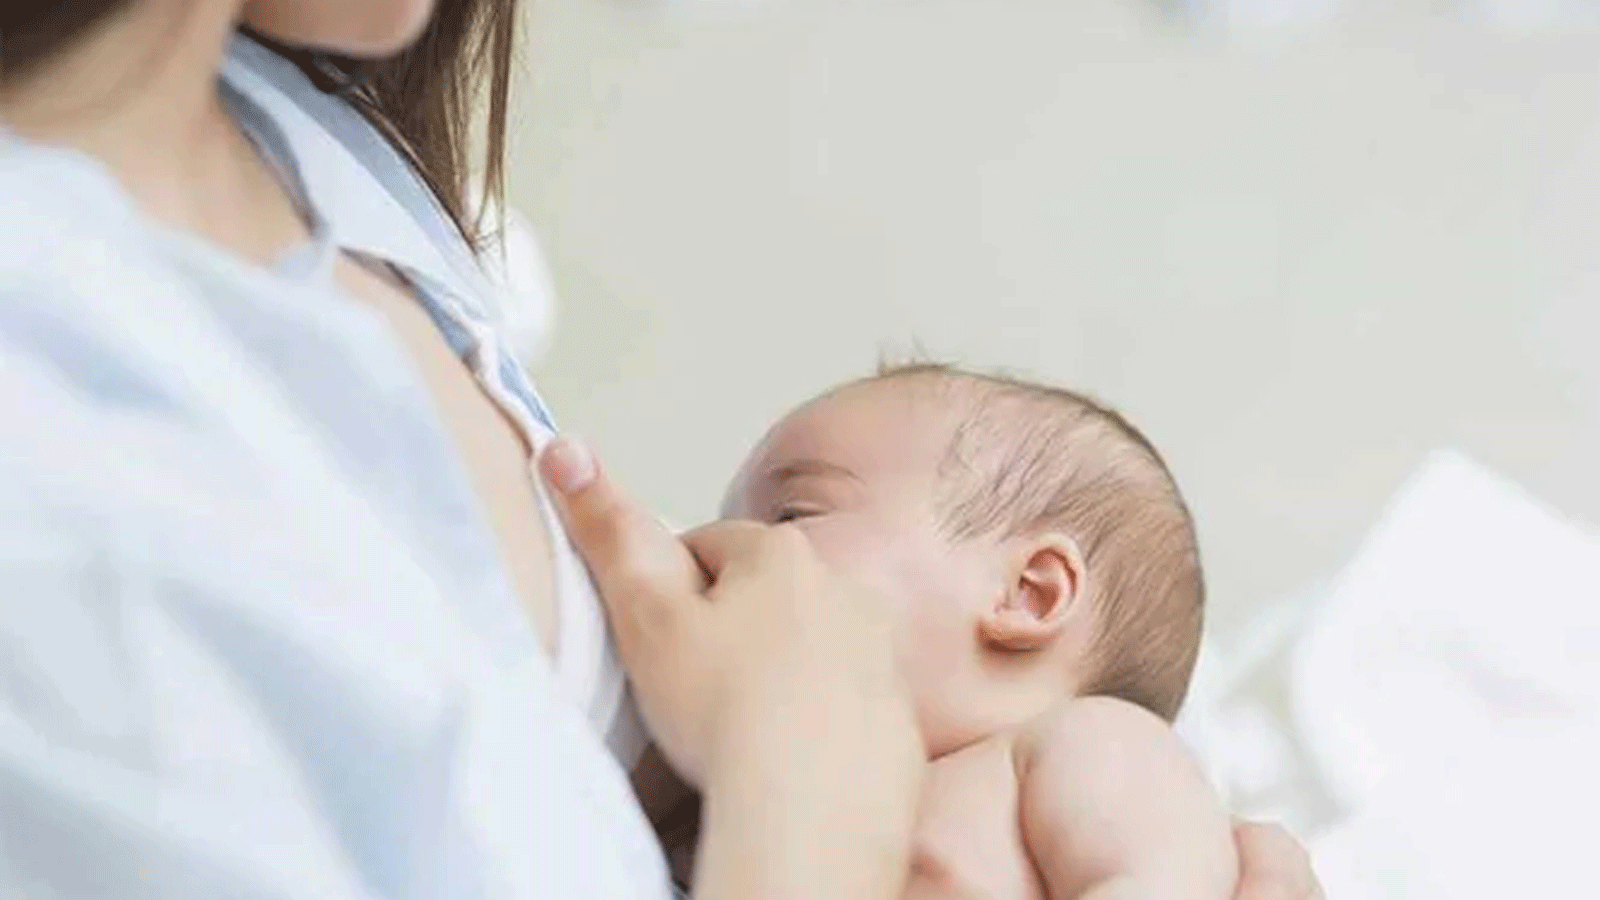 الأطباء يشددون على أهمية الرضاعة الطبيعية للأطفال